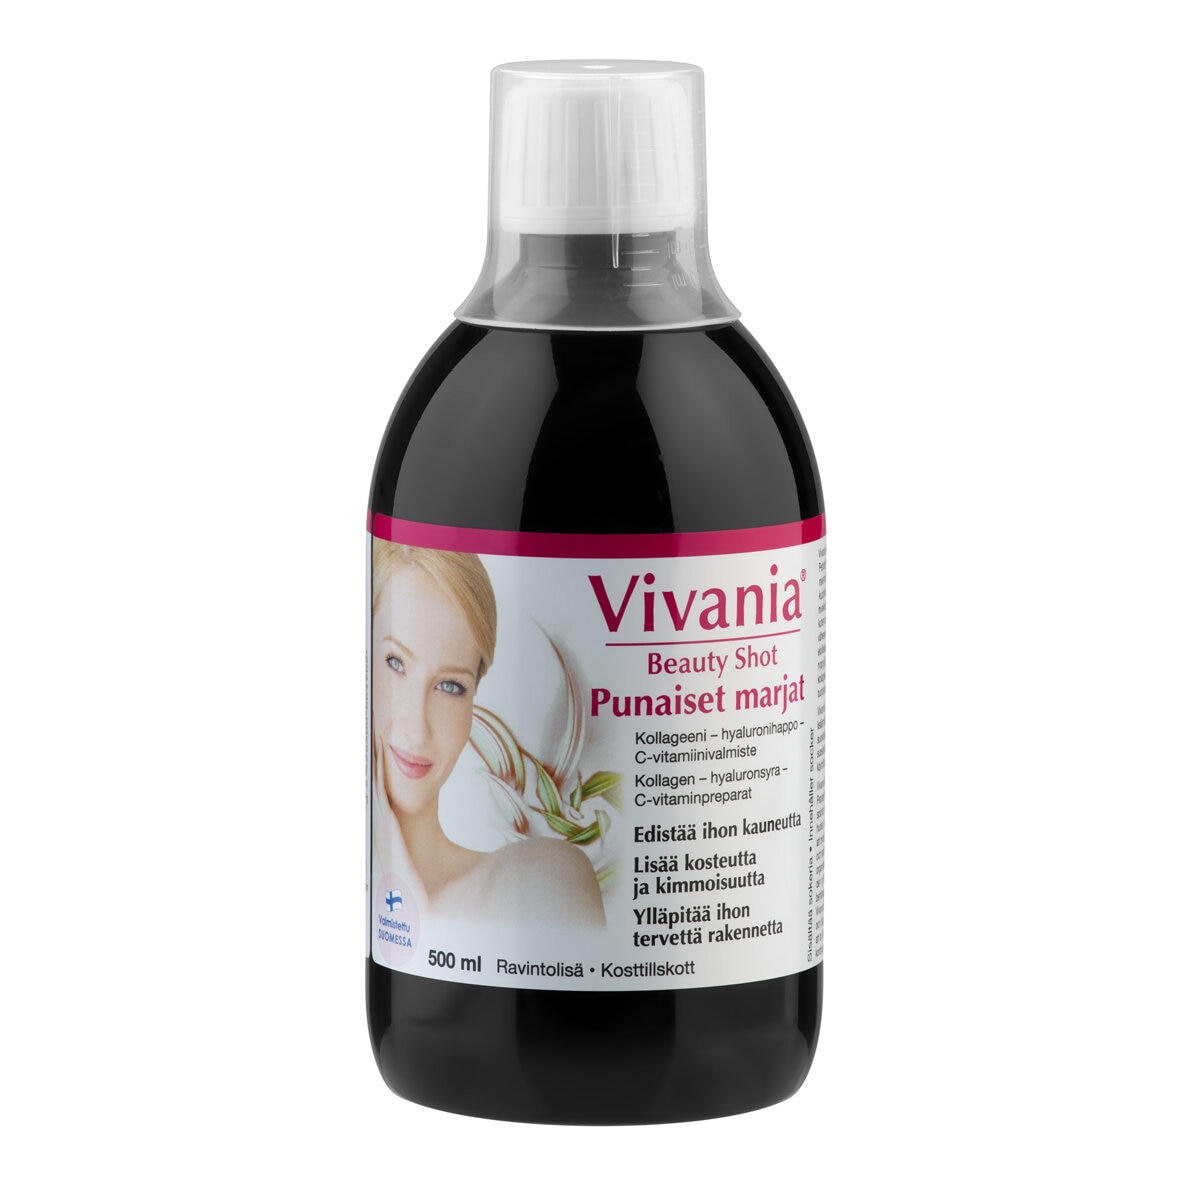 Vivania Beauty Shot punaiset marjat 500 ml